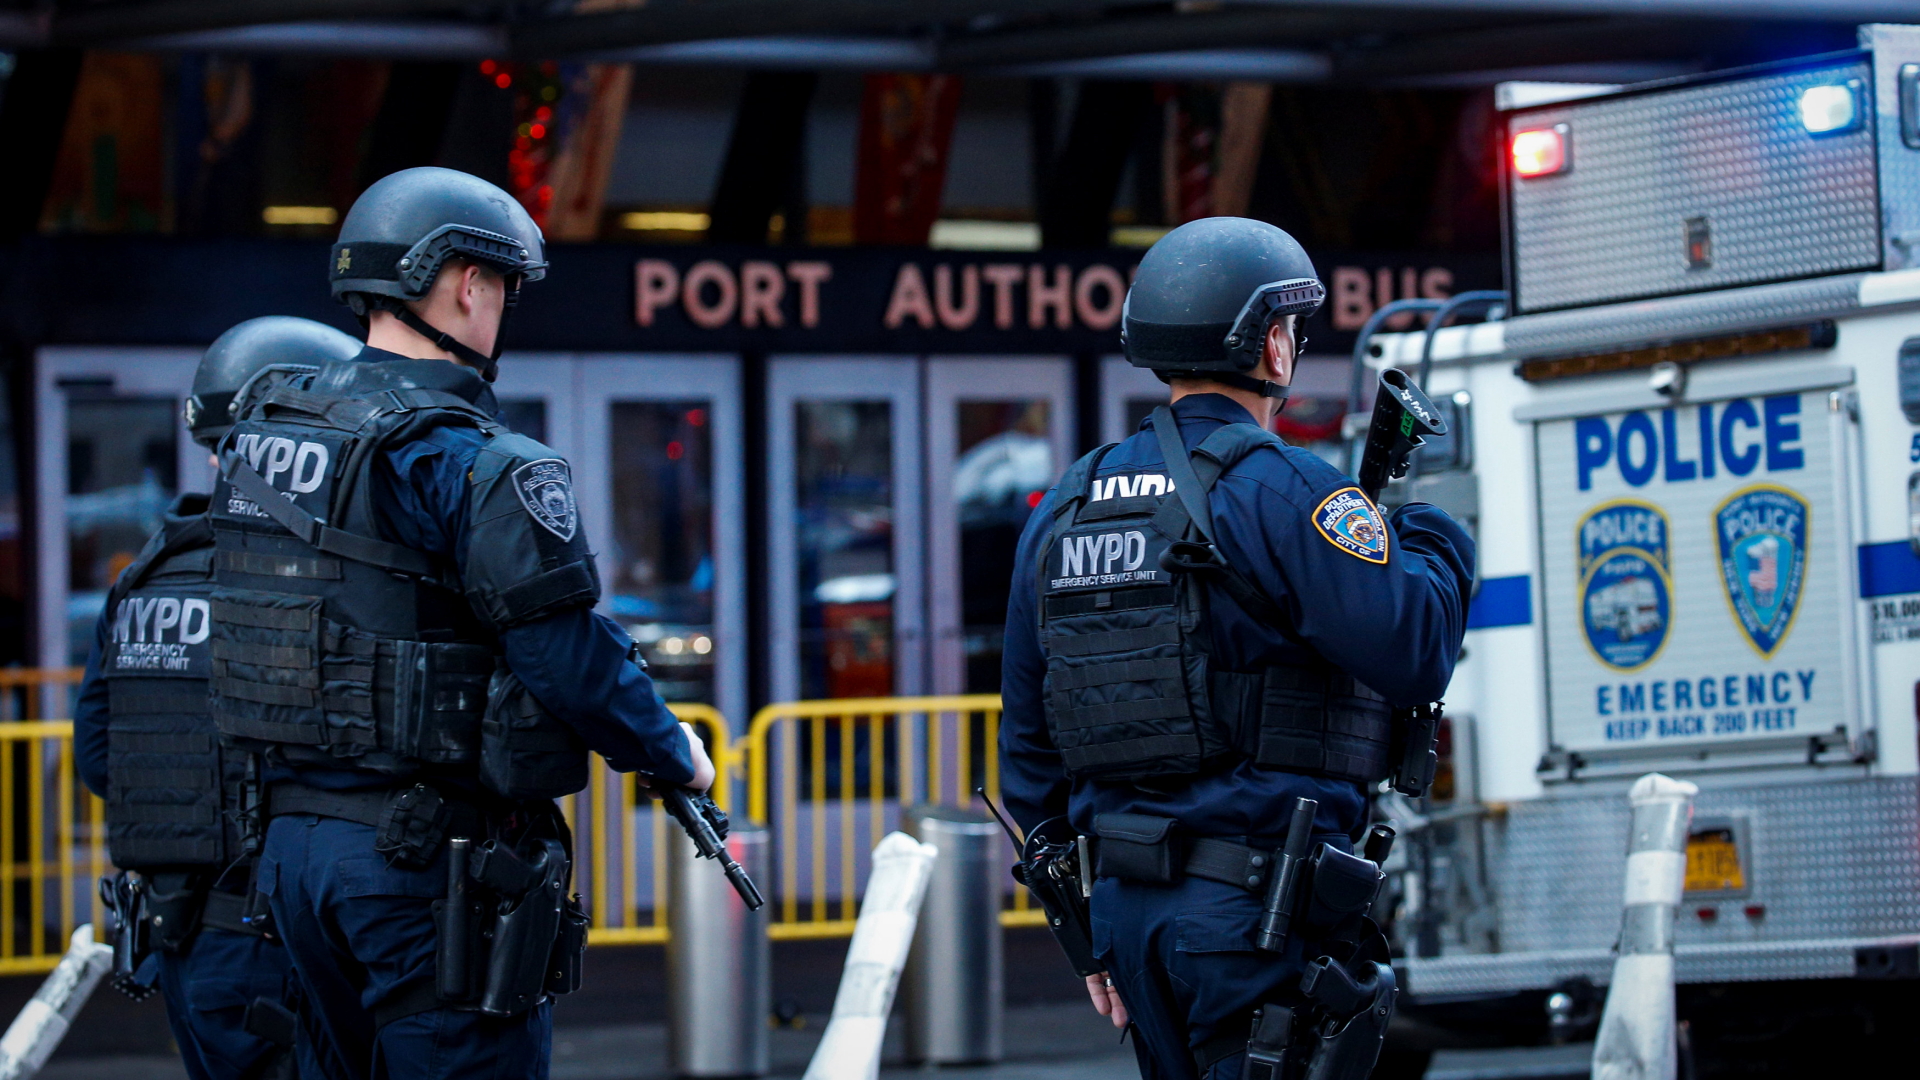 Bewaffnete Polizisten patrouillieren vor der Port Authority-Station in New York.